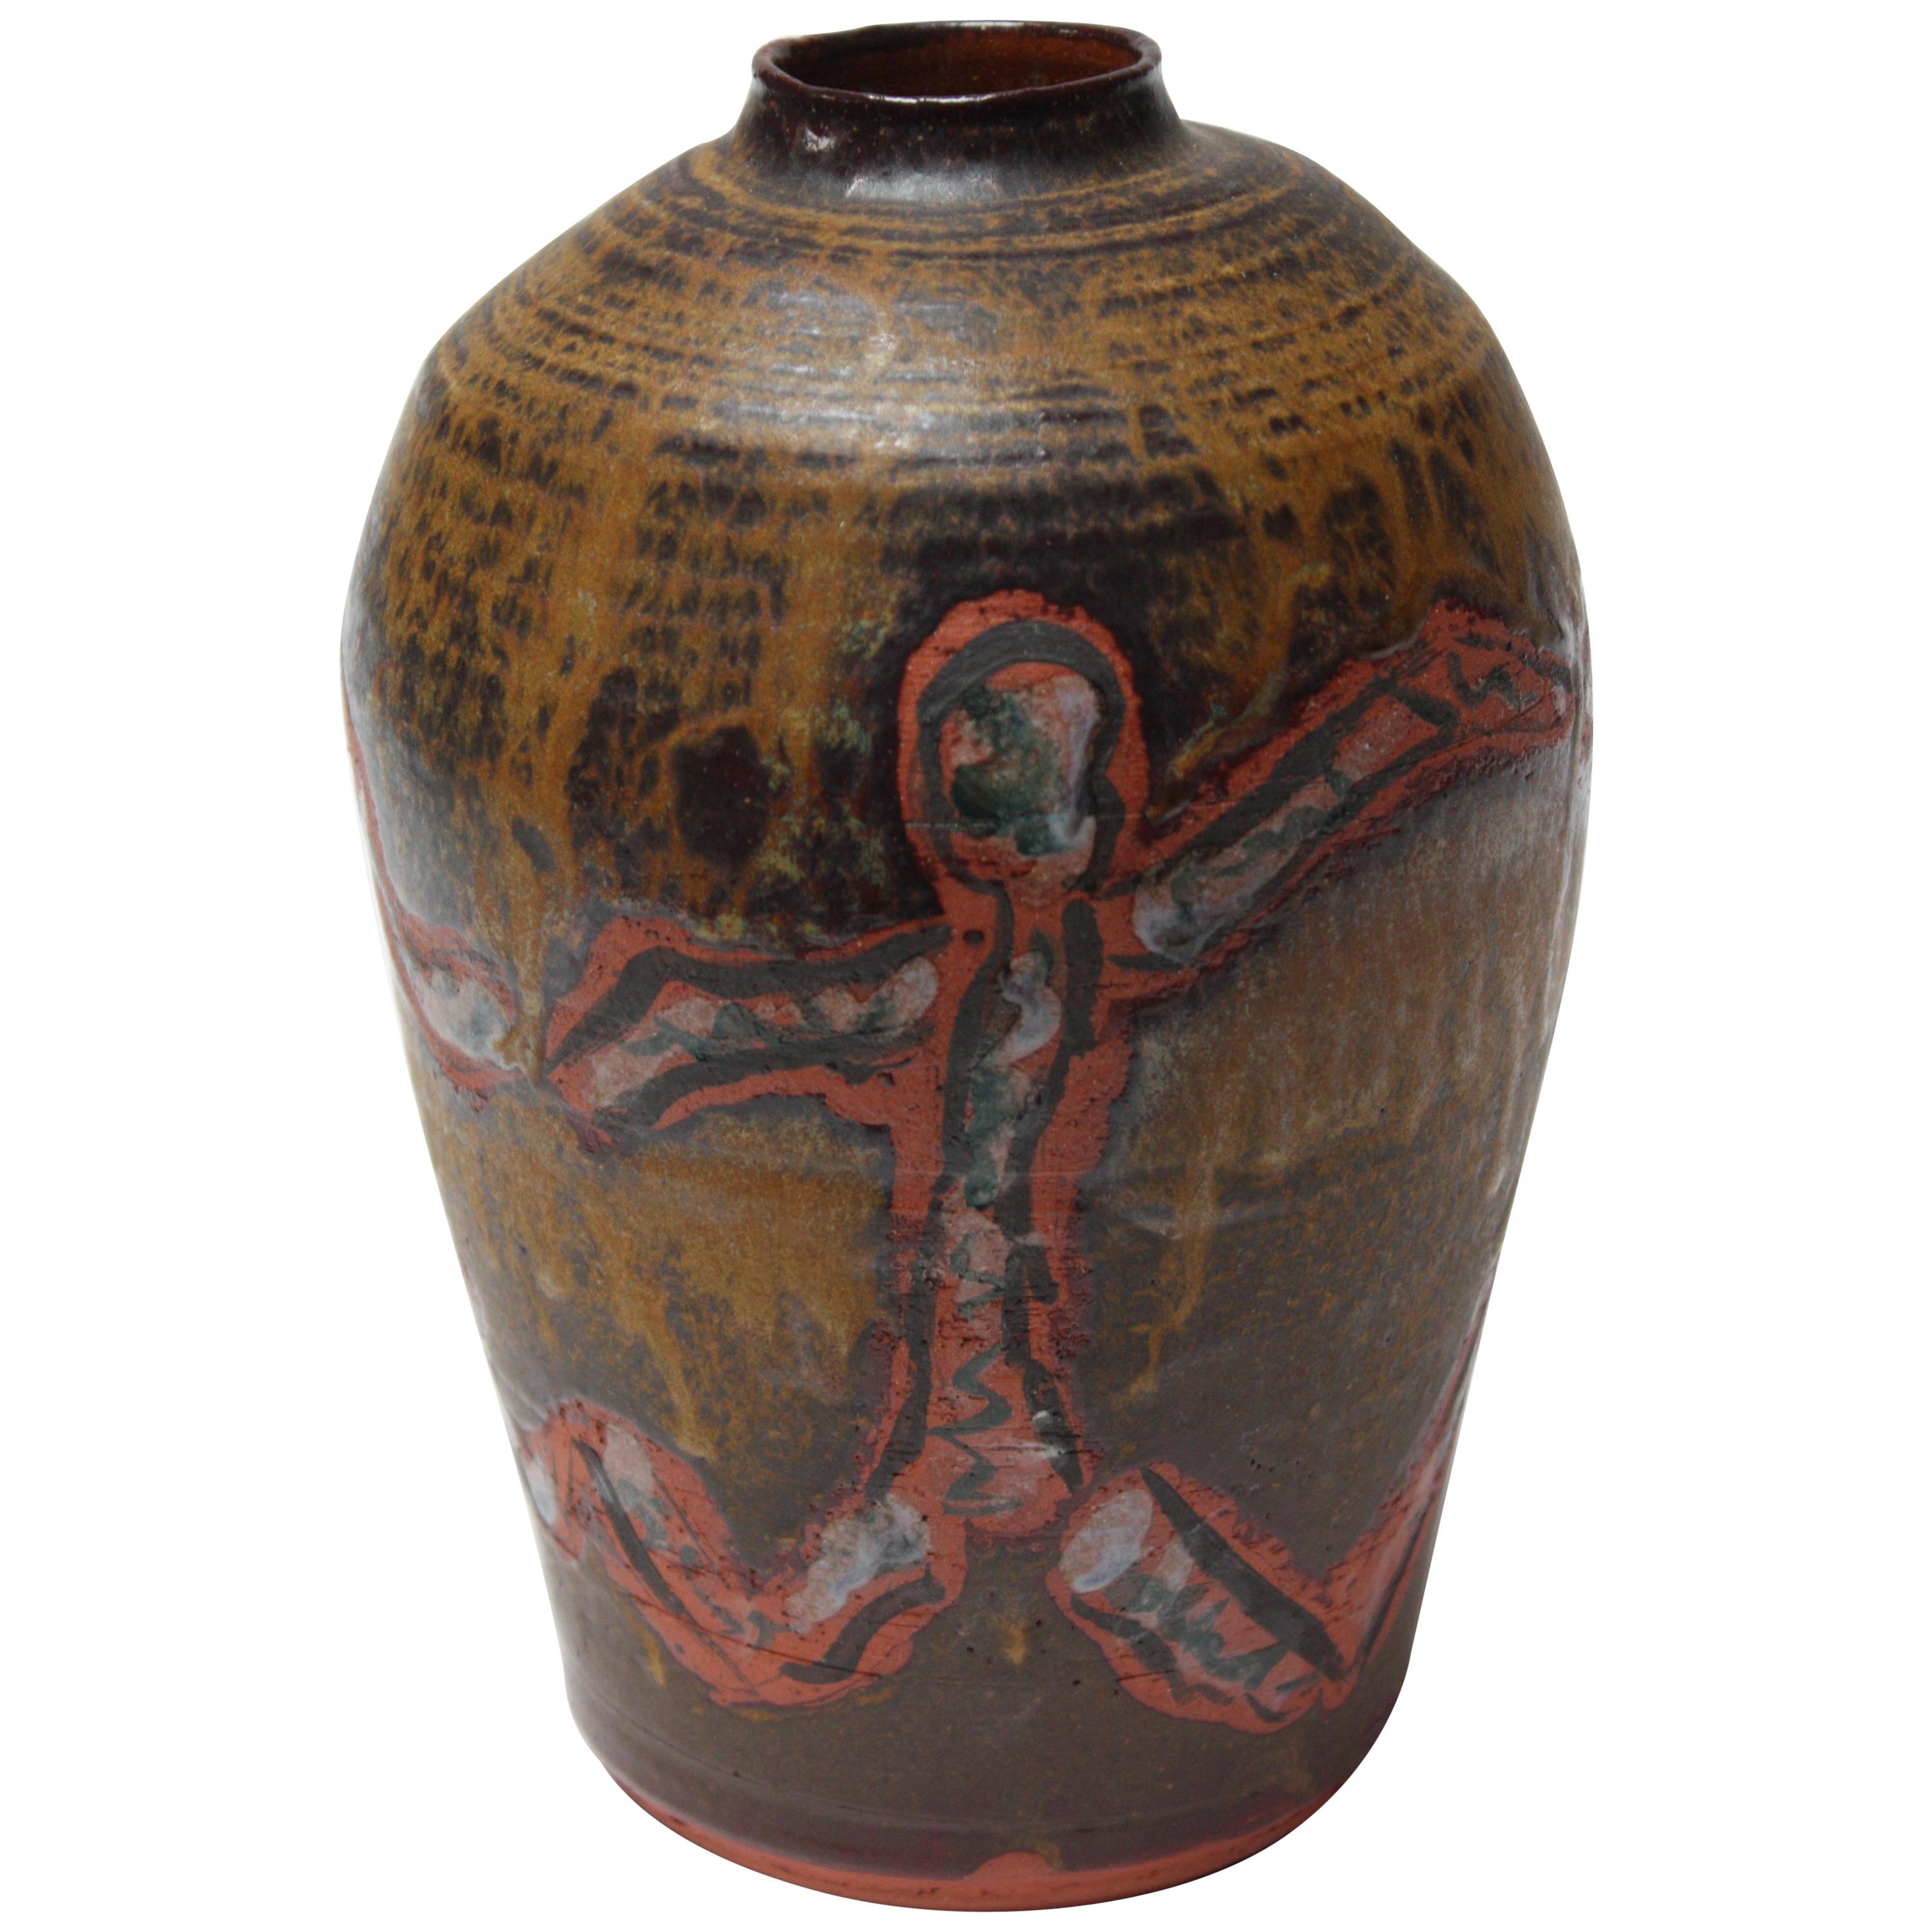 Studio Ceramic Terracotta Vase with Crude Figural Design